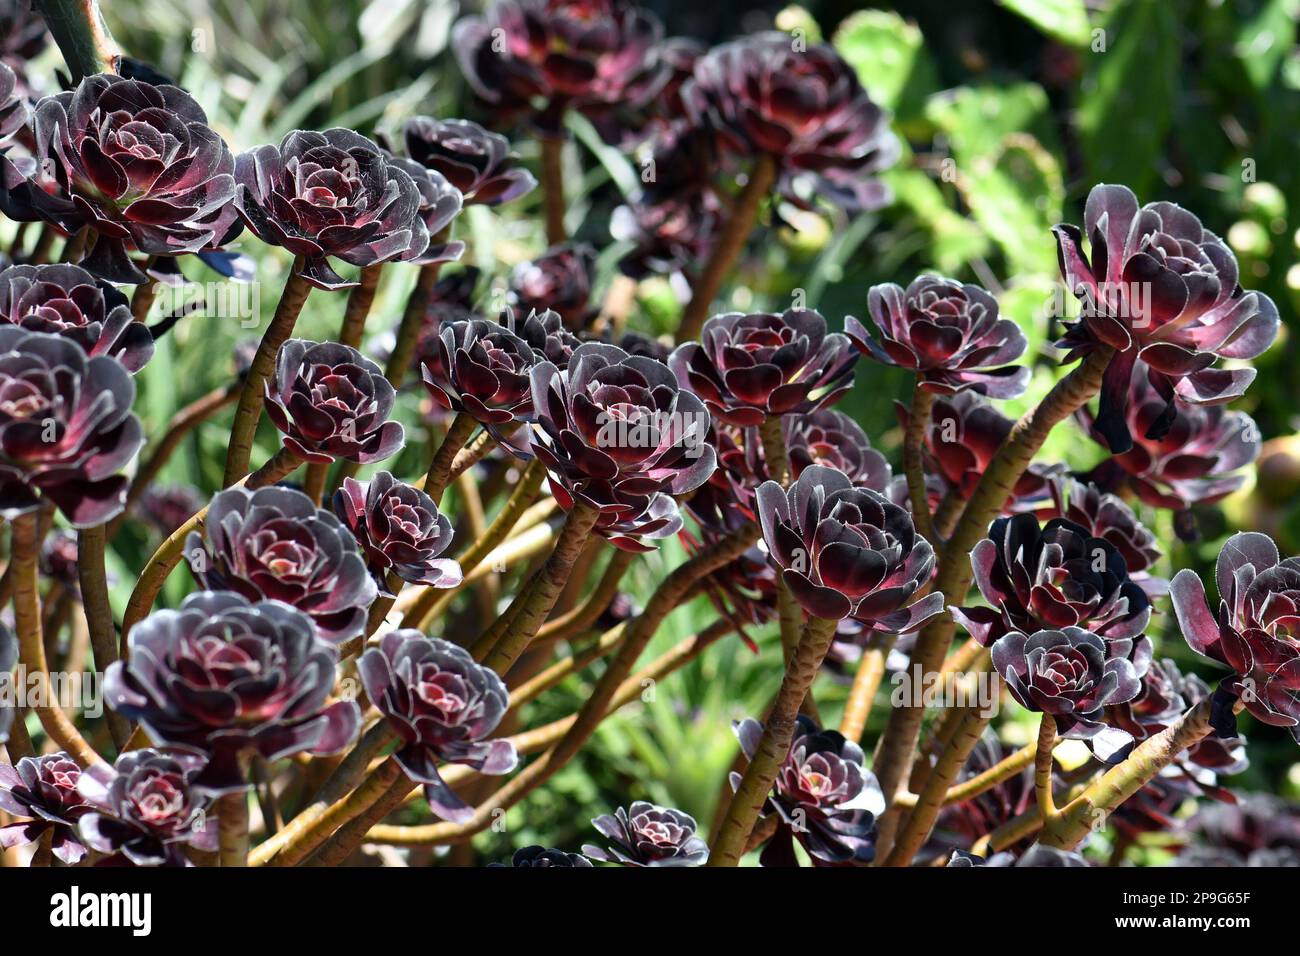 Burgundy dark purple red foliage and rosettes of the succulent plant Aeonium arboretum atropurpureum, family Crassulaceae. Stock Photo